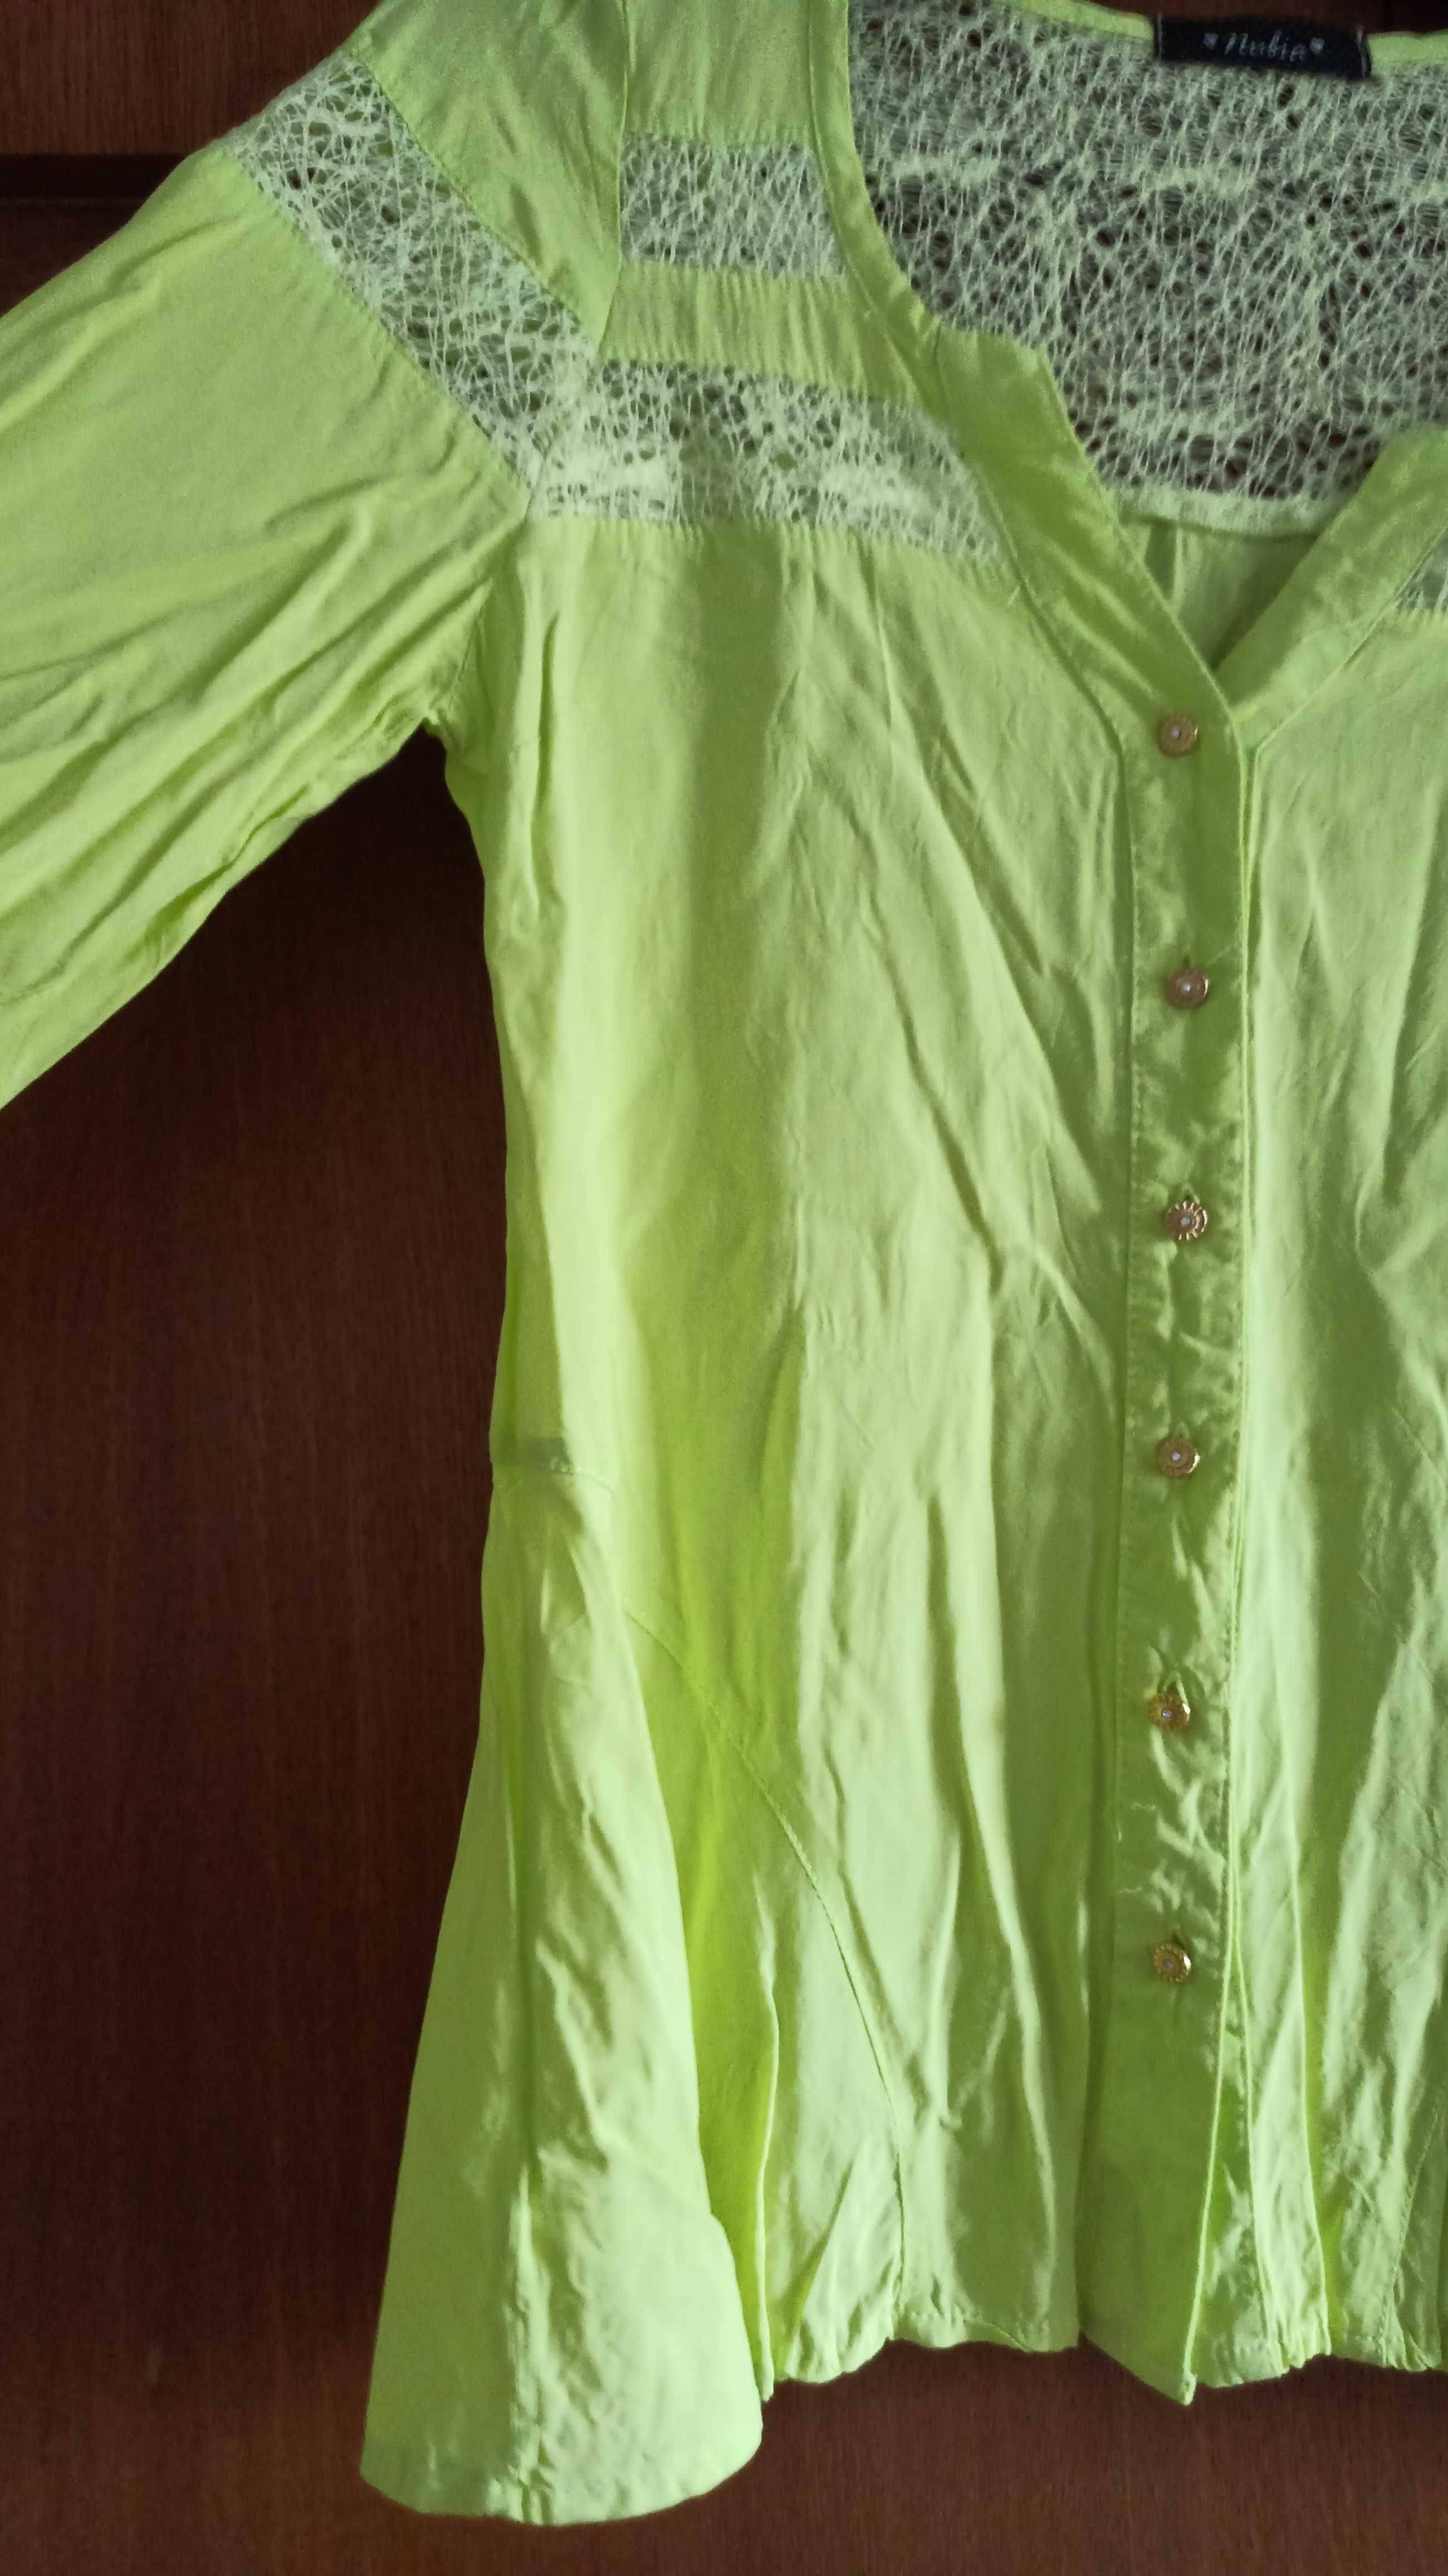 блуза в лайм зелено / Lime green blouse